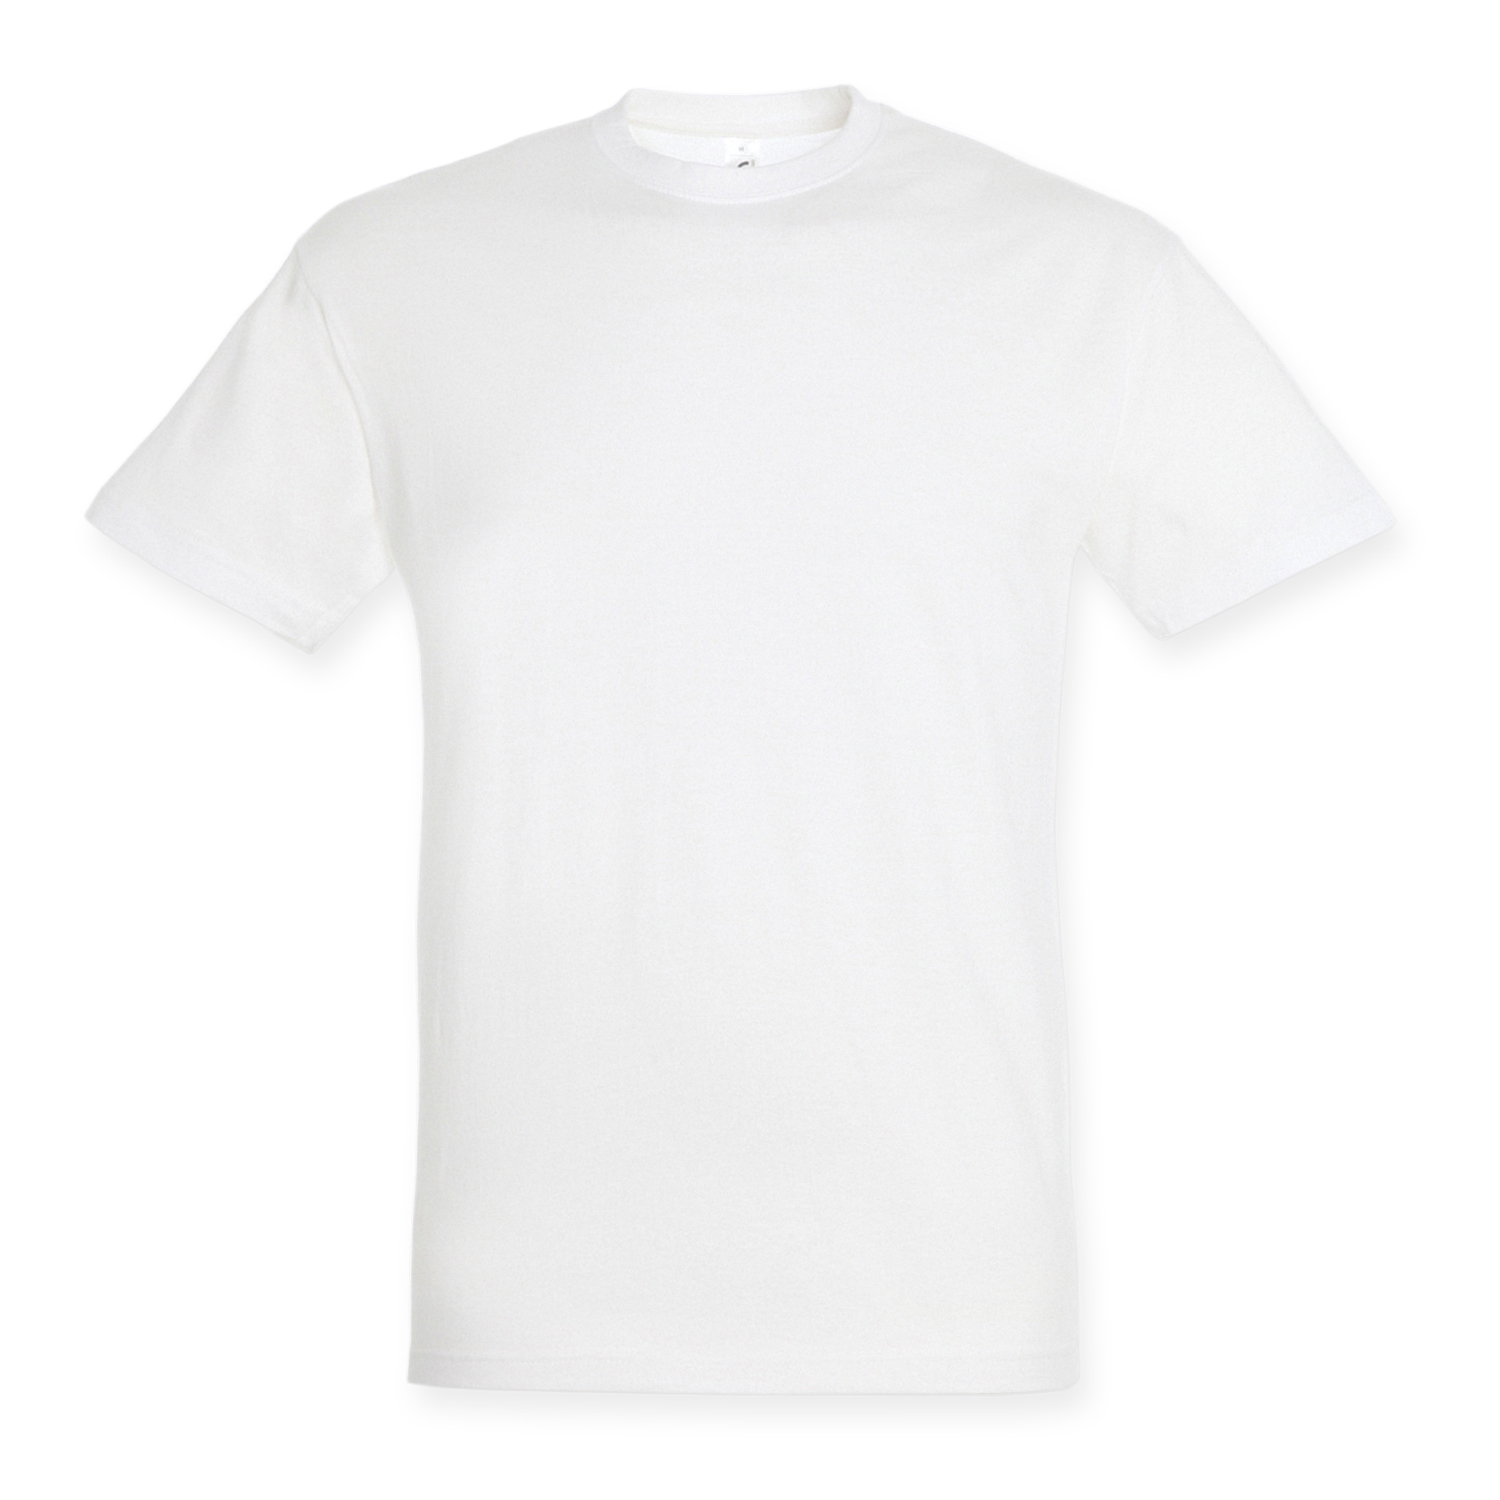 TRENDS | SOLS Regent Adult T-Shirt